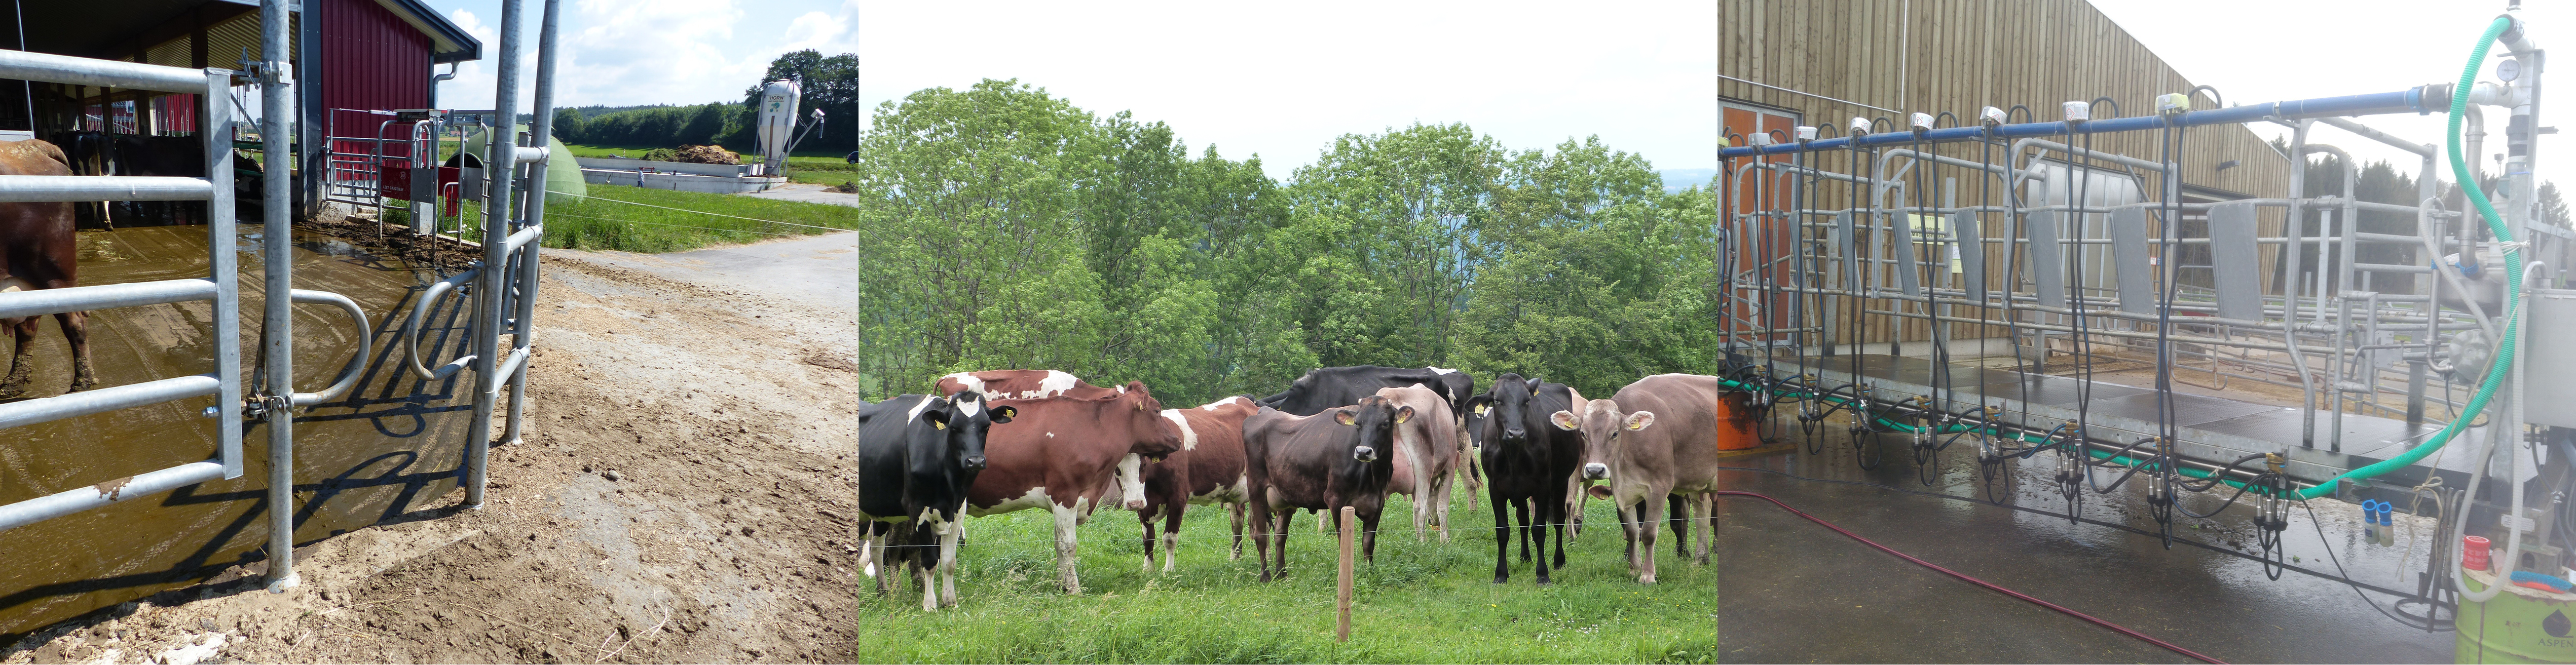 Symbolbild mit Kühen auf der Weide und mobilen Melksyständen